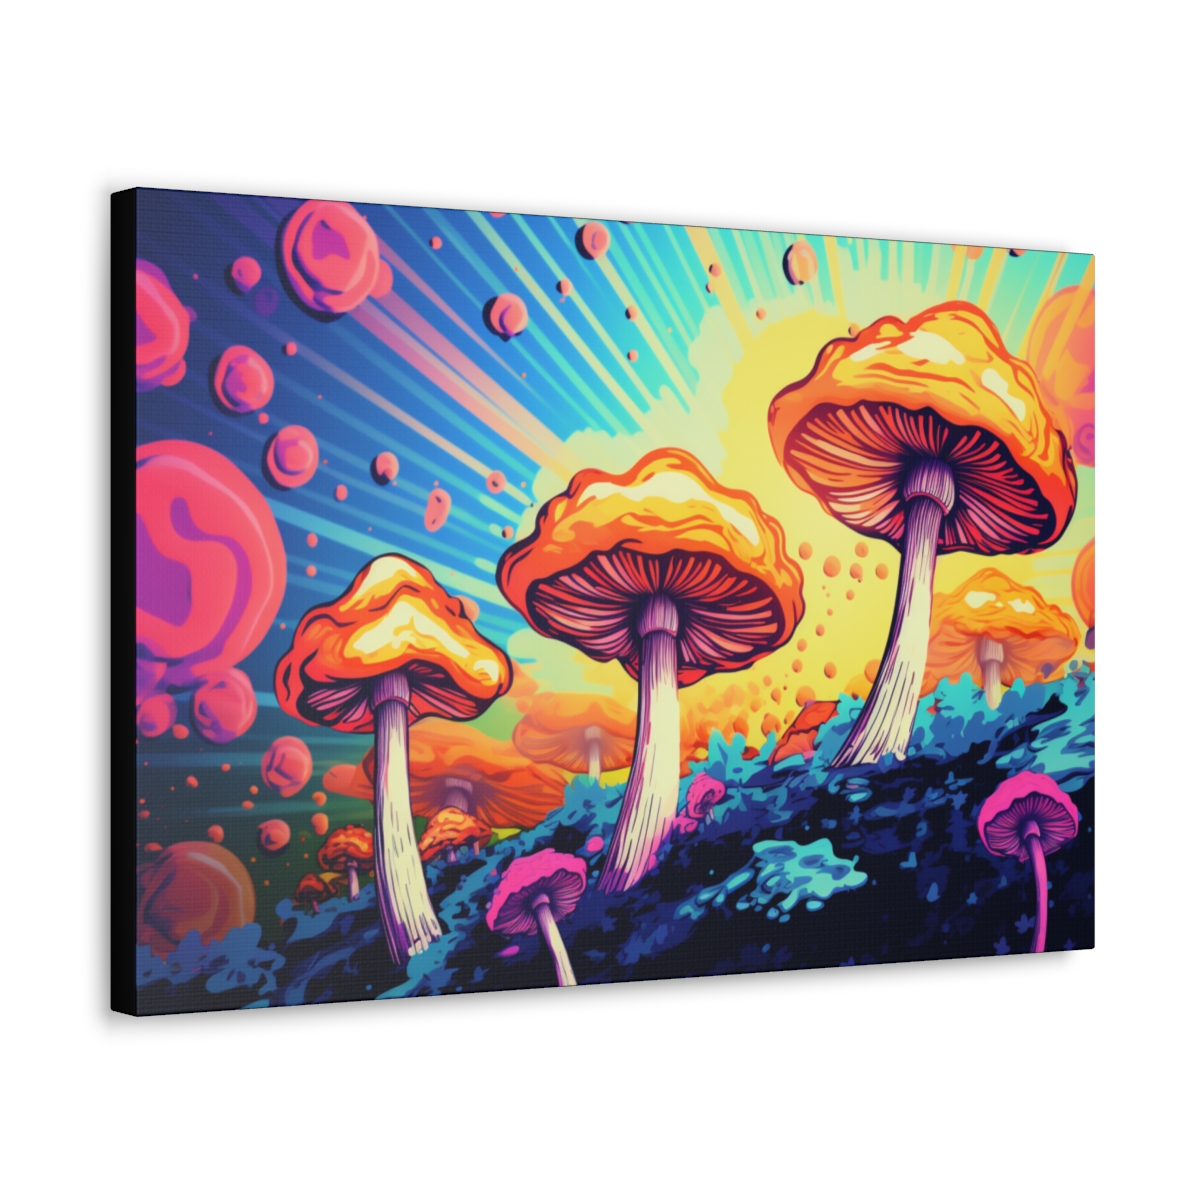 Magic Mushroom Art: Microdosing